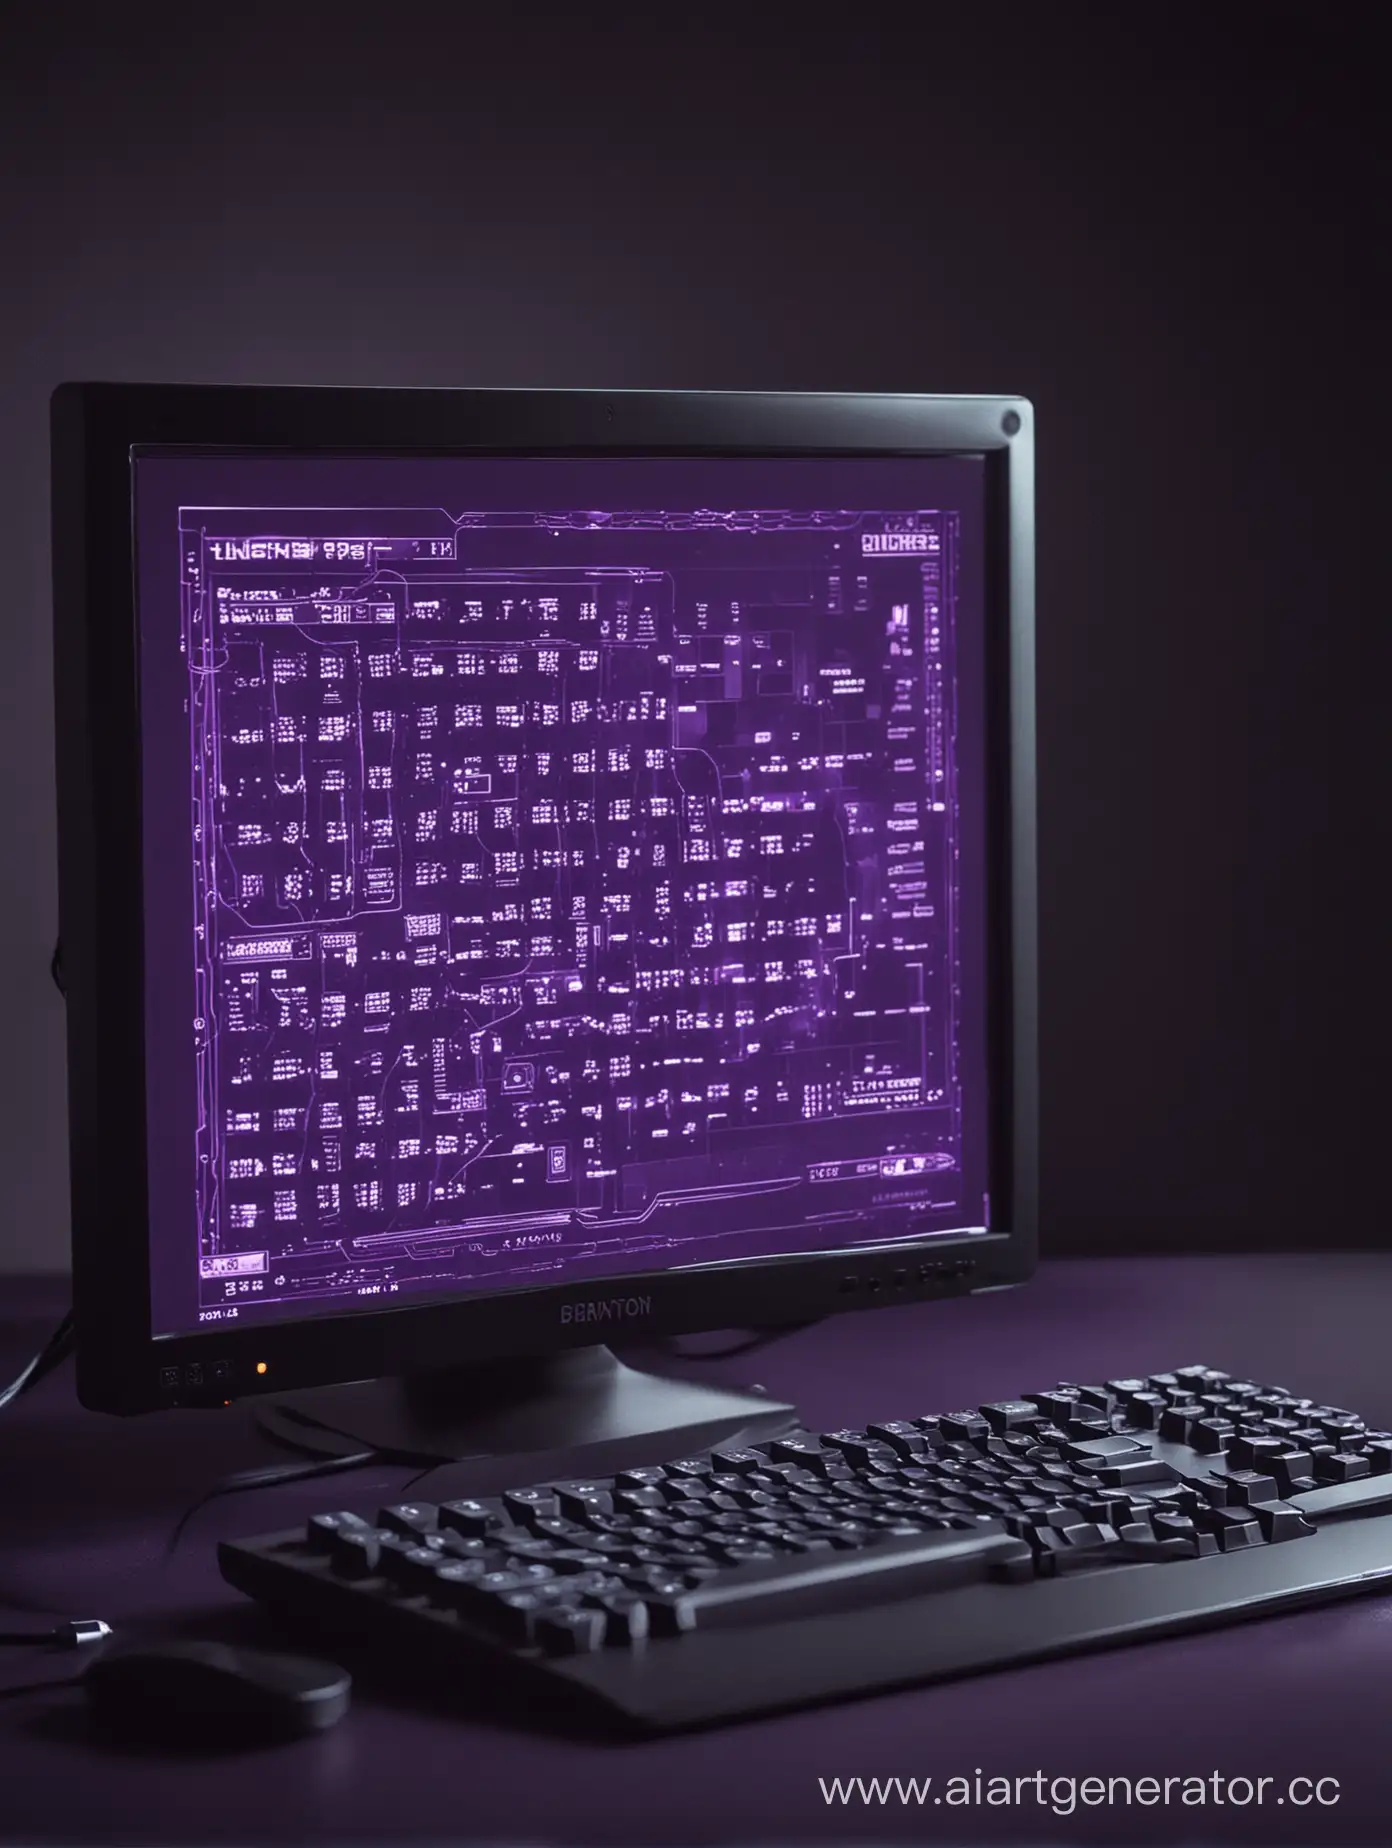 компьютер с игрой на экране в тёмно-фиолетовых тонах